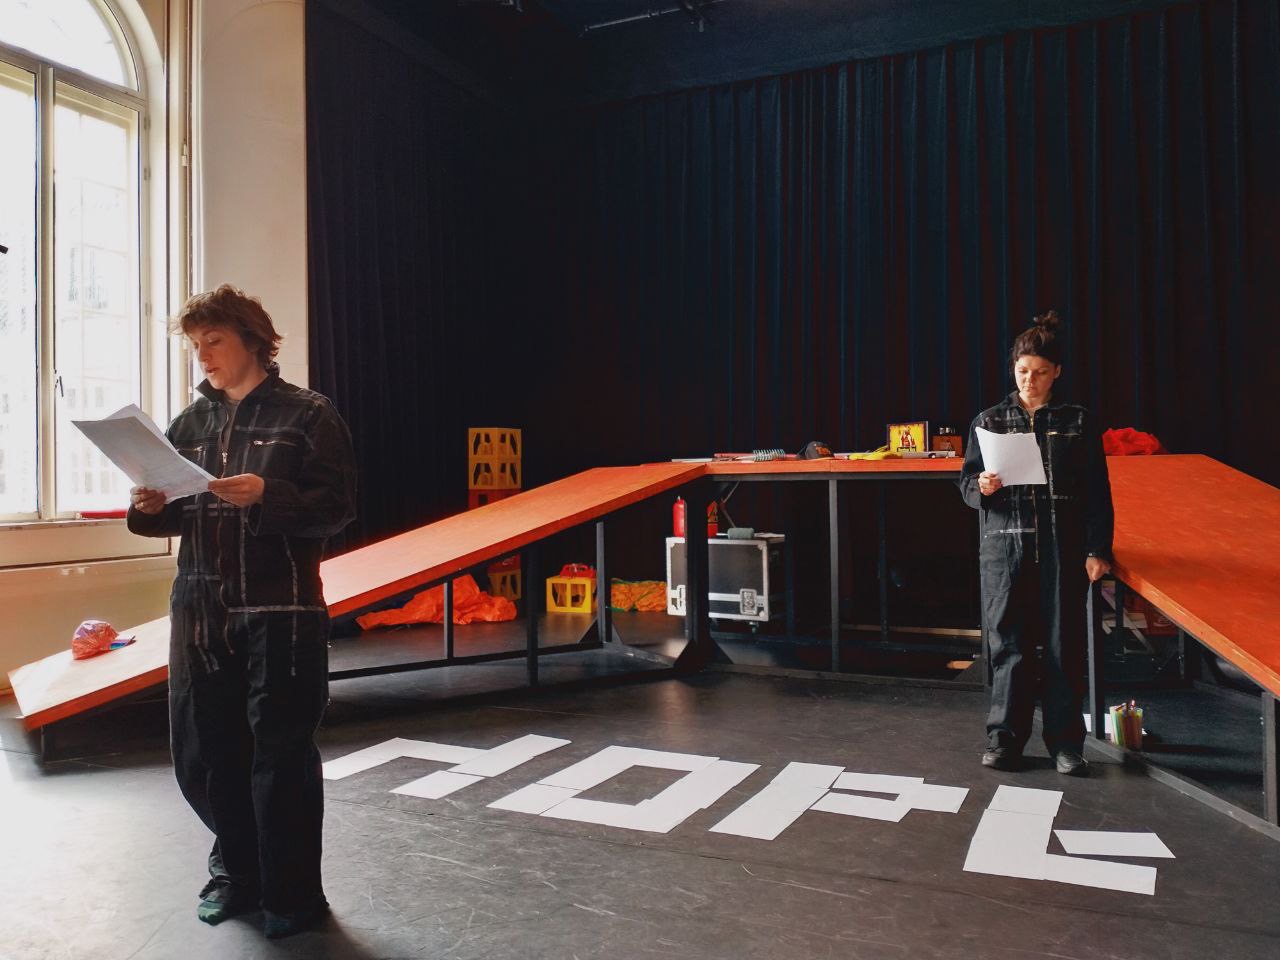 Документальна вистава «Witnessing U». Проект реалізований на базі камерного театру De Toneelmakerij. Амстердам. 2022 рік